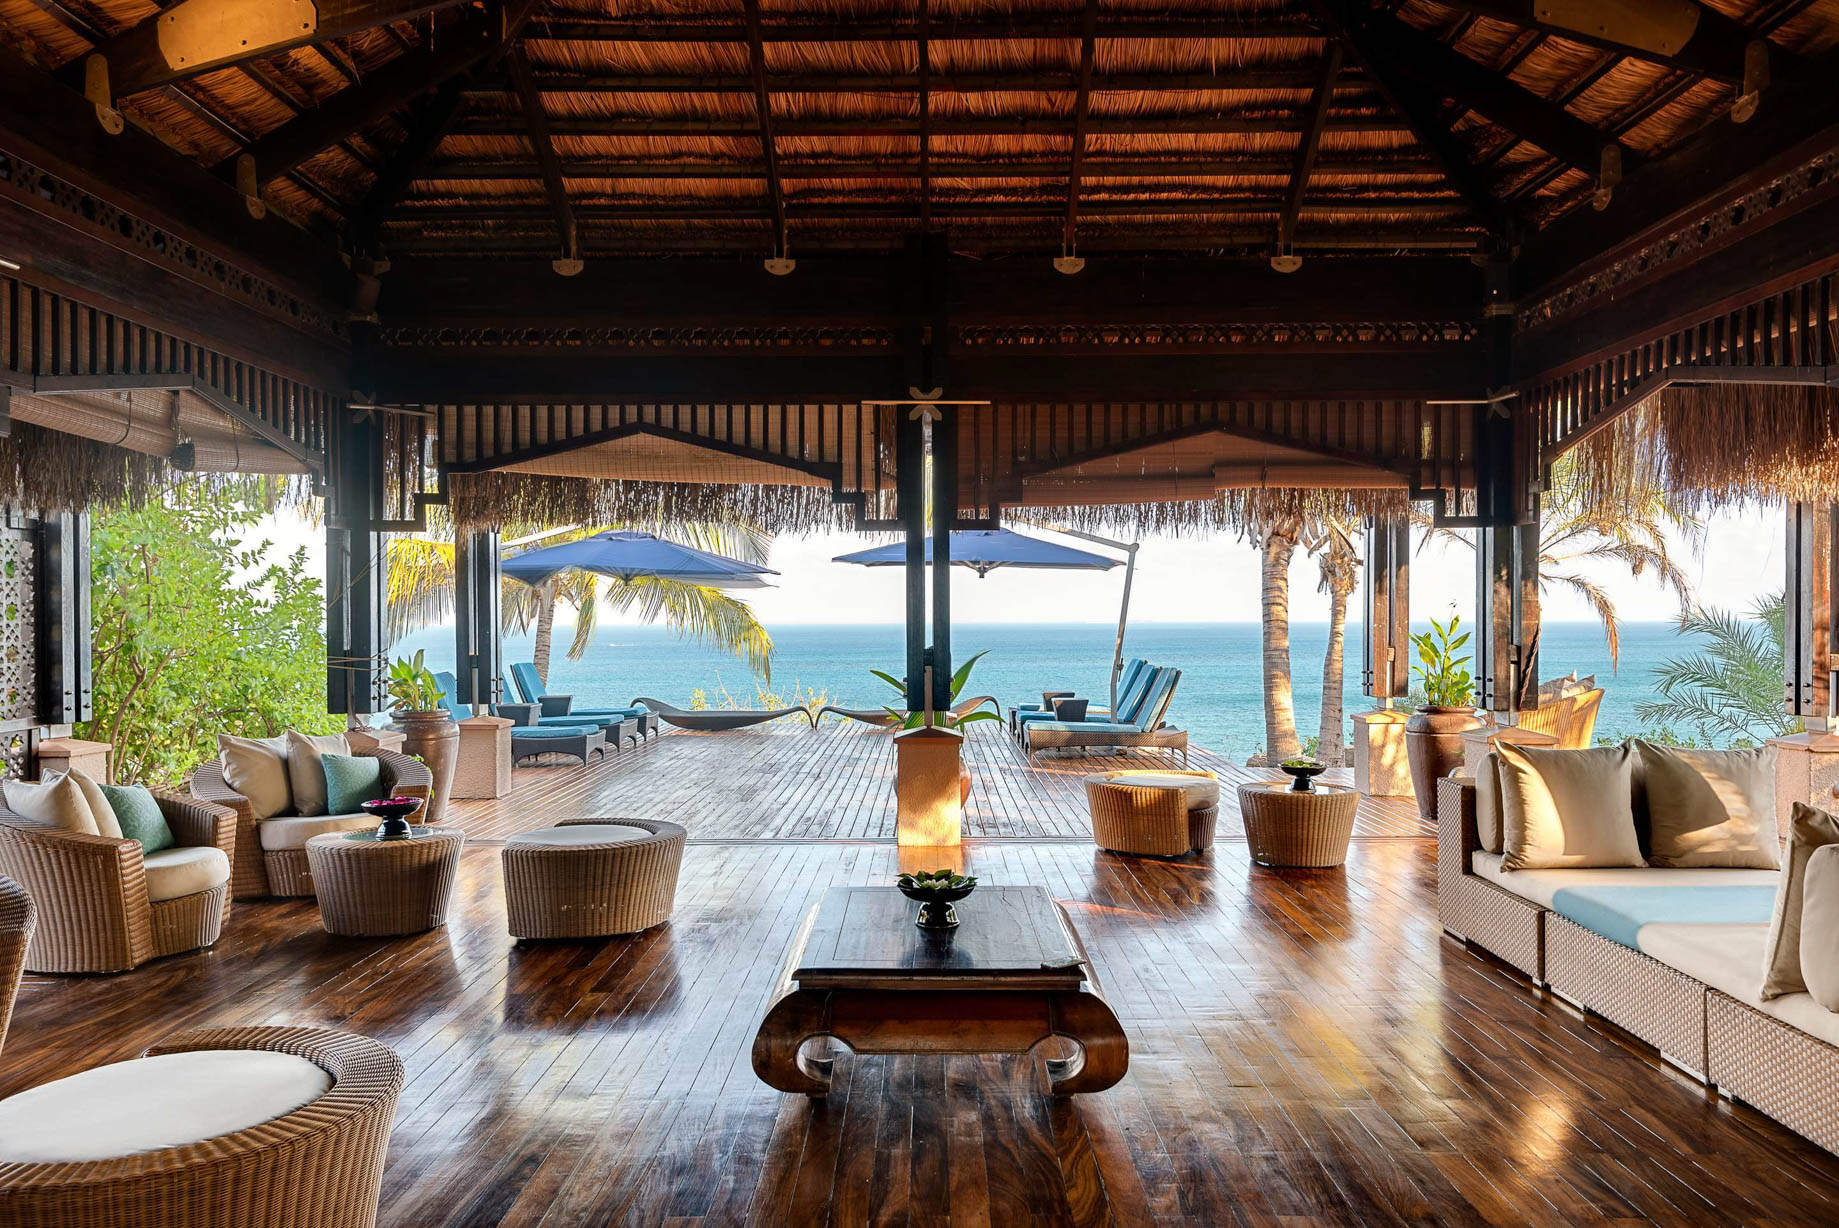 Anantara Bazaruto Island Resort - Mozambique - Spa Lobby